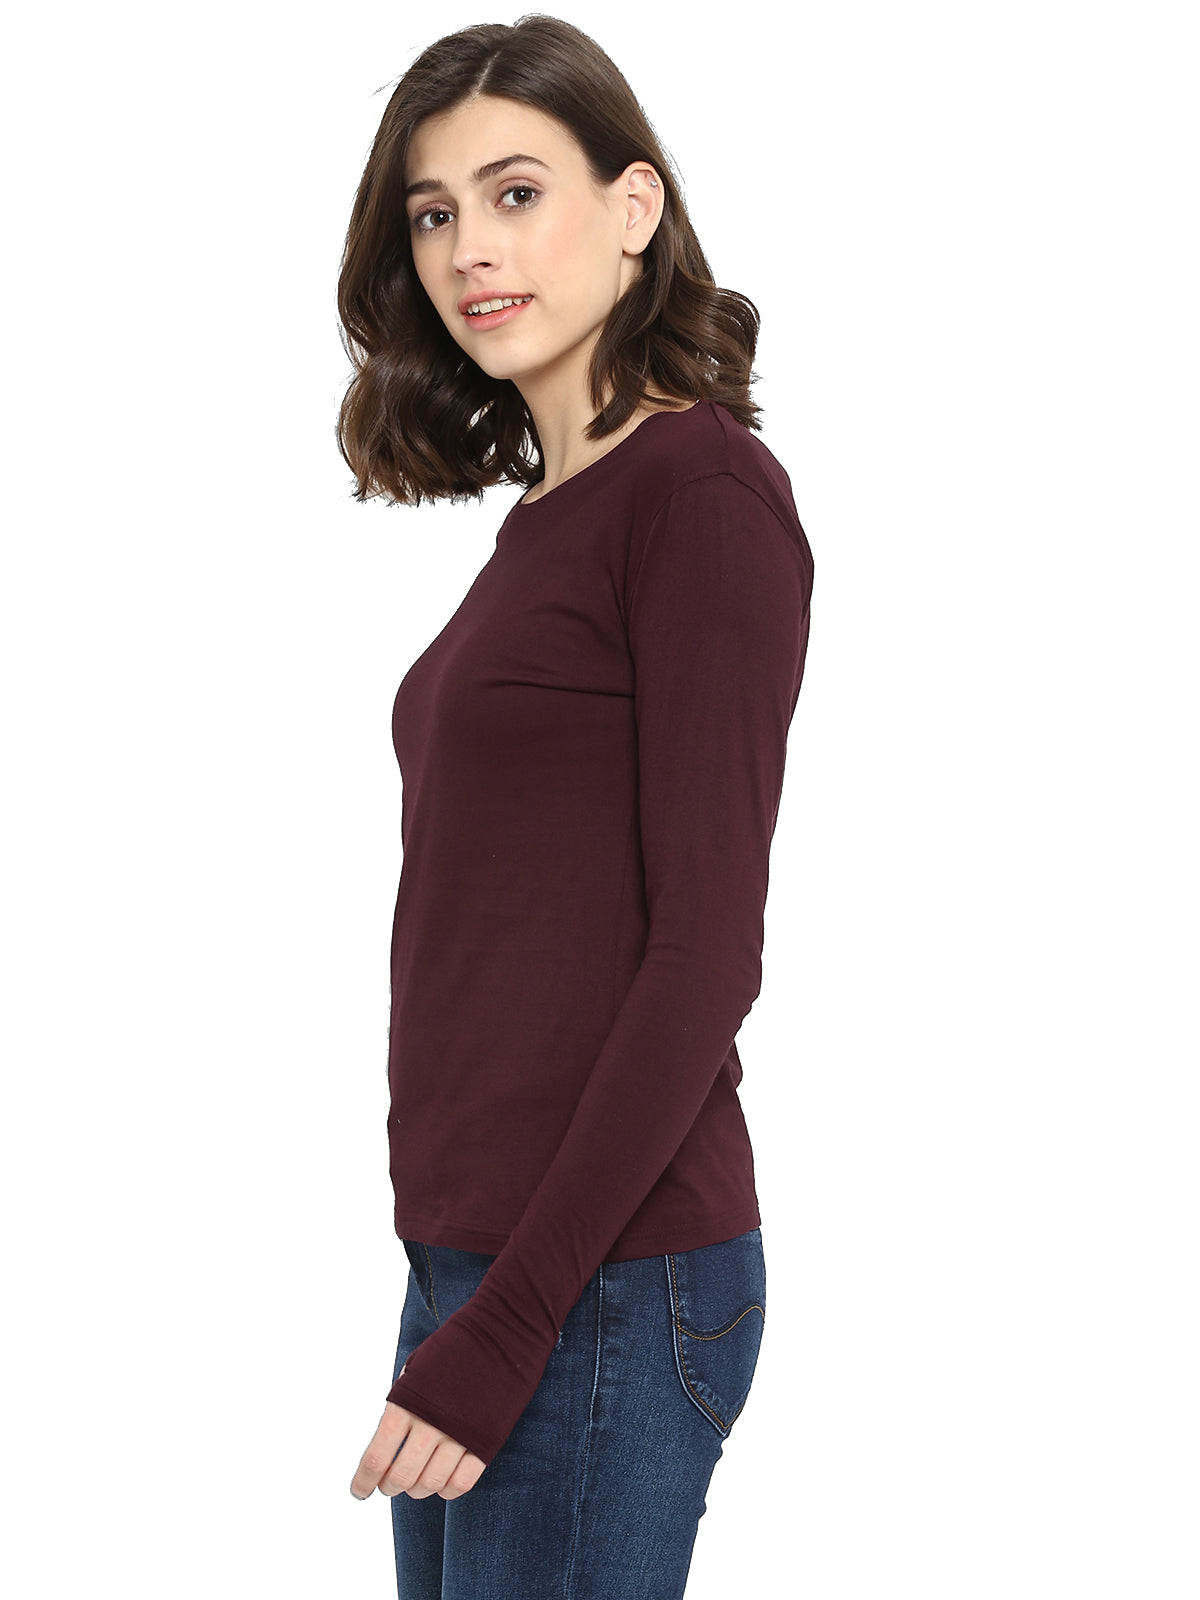 Ap'pulse Women's Long Sleeve Thumbopen Tshirt